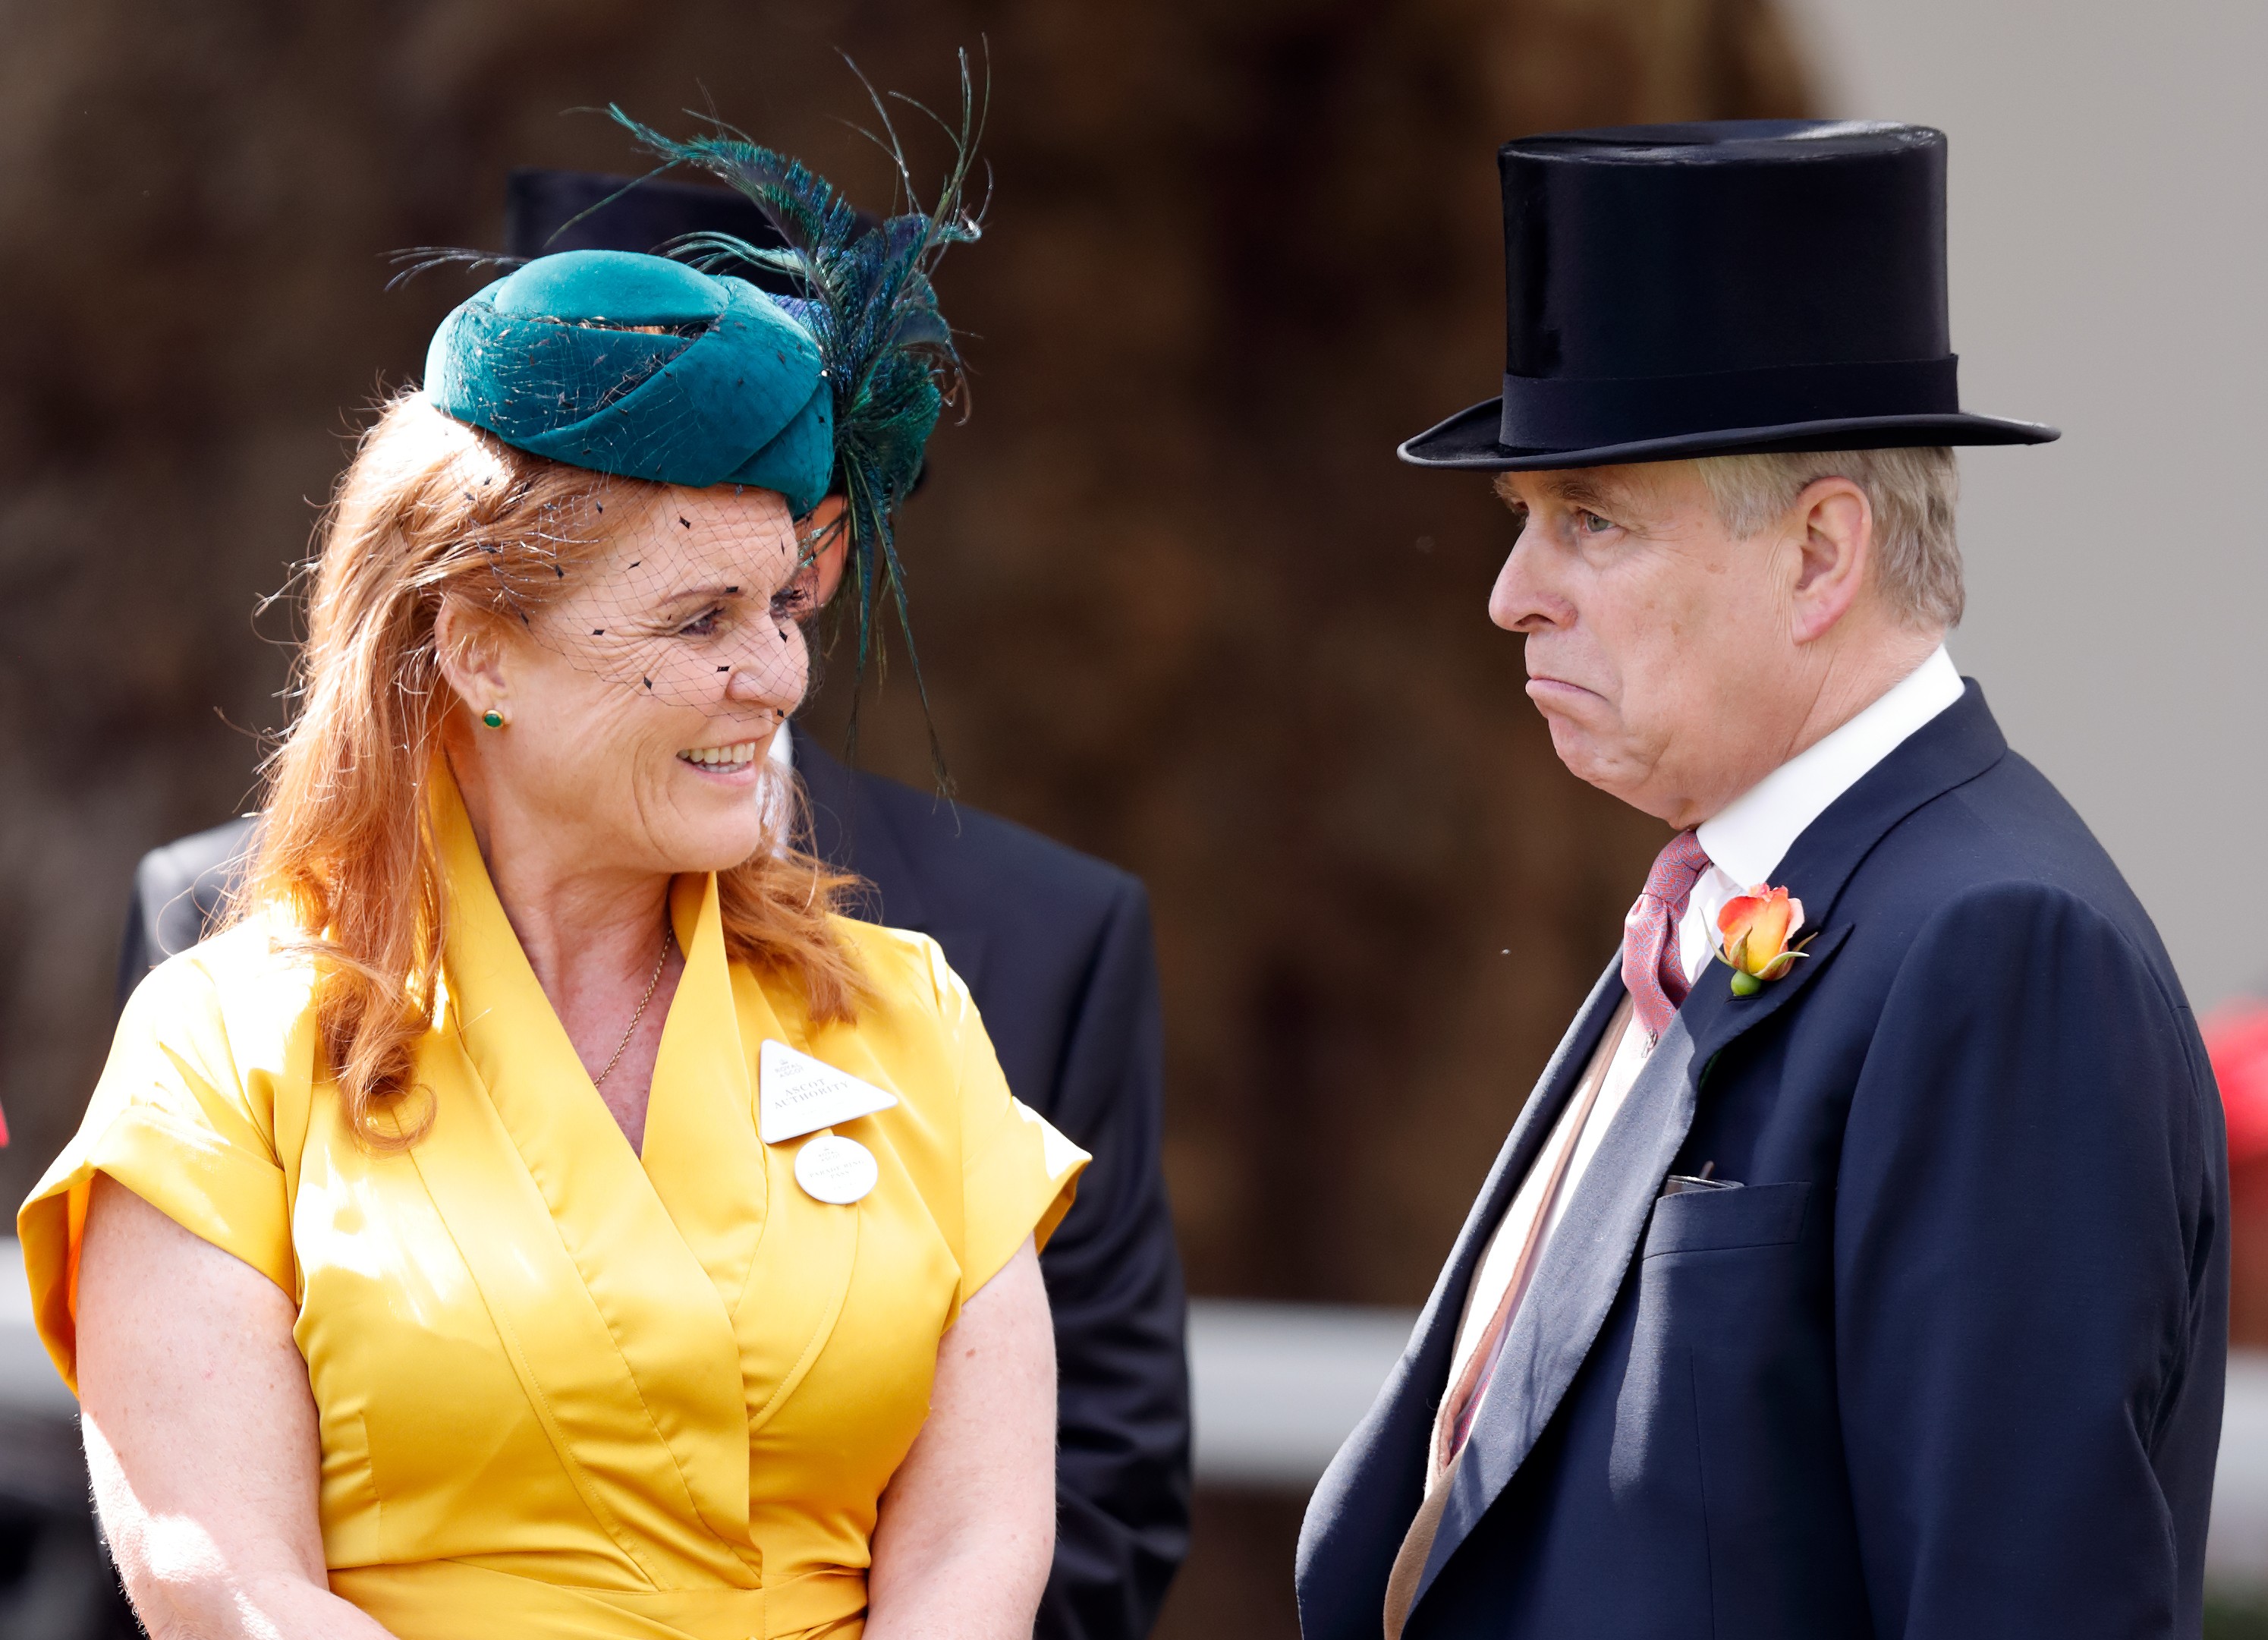 O Príncipe Andrew na companhia da ex-esposa, Sarah Ferguson (Foto: Getty Images)